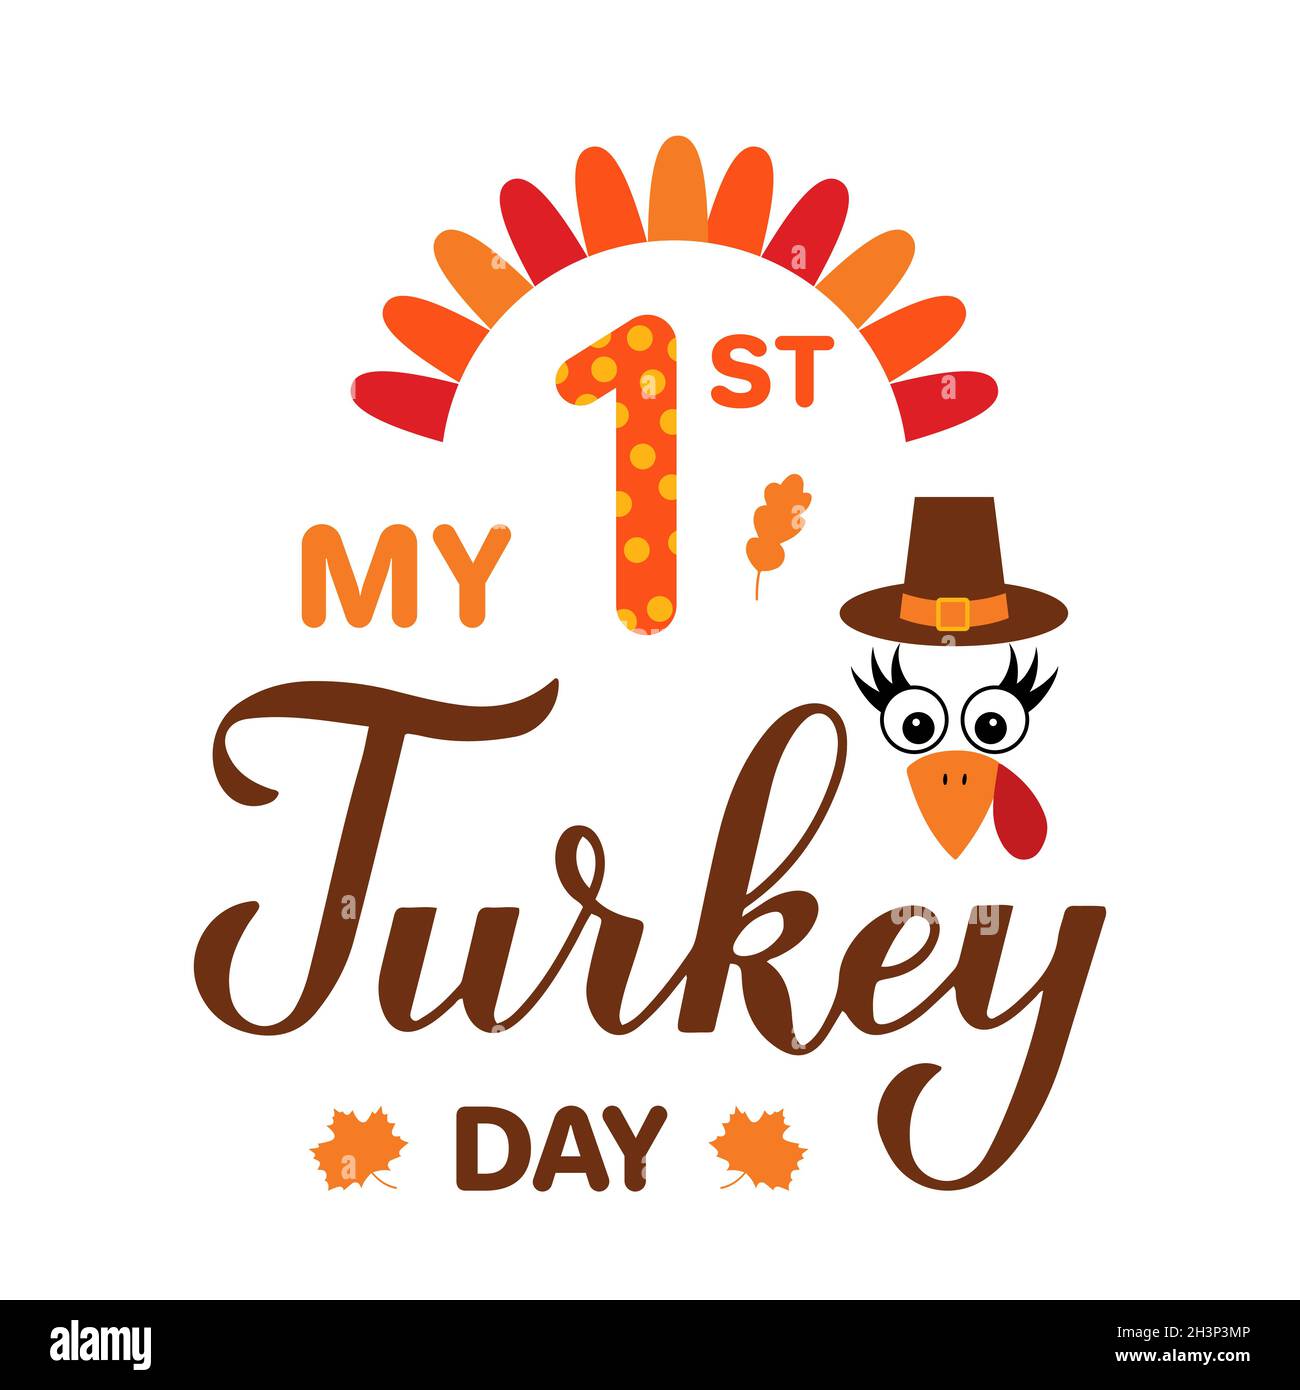 Mon 1er jour de Turquie calligraphie à la main lettrage.Citation amusante du jour de Thanksgiving.Modèle vectoriel pour carte de vœux, poster typographique, bannière, vêtements pour enfants Illustration de Vecteur